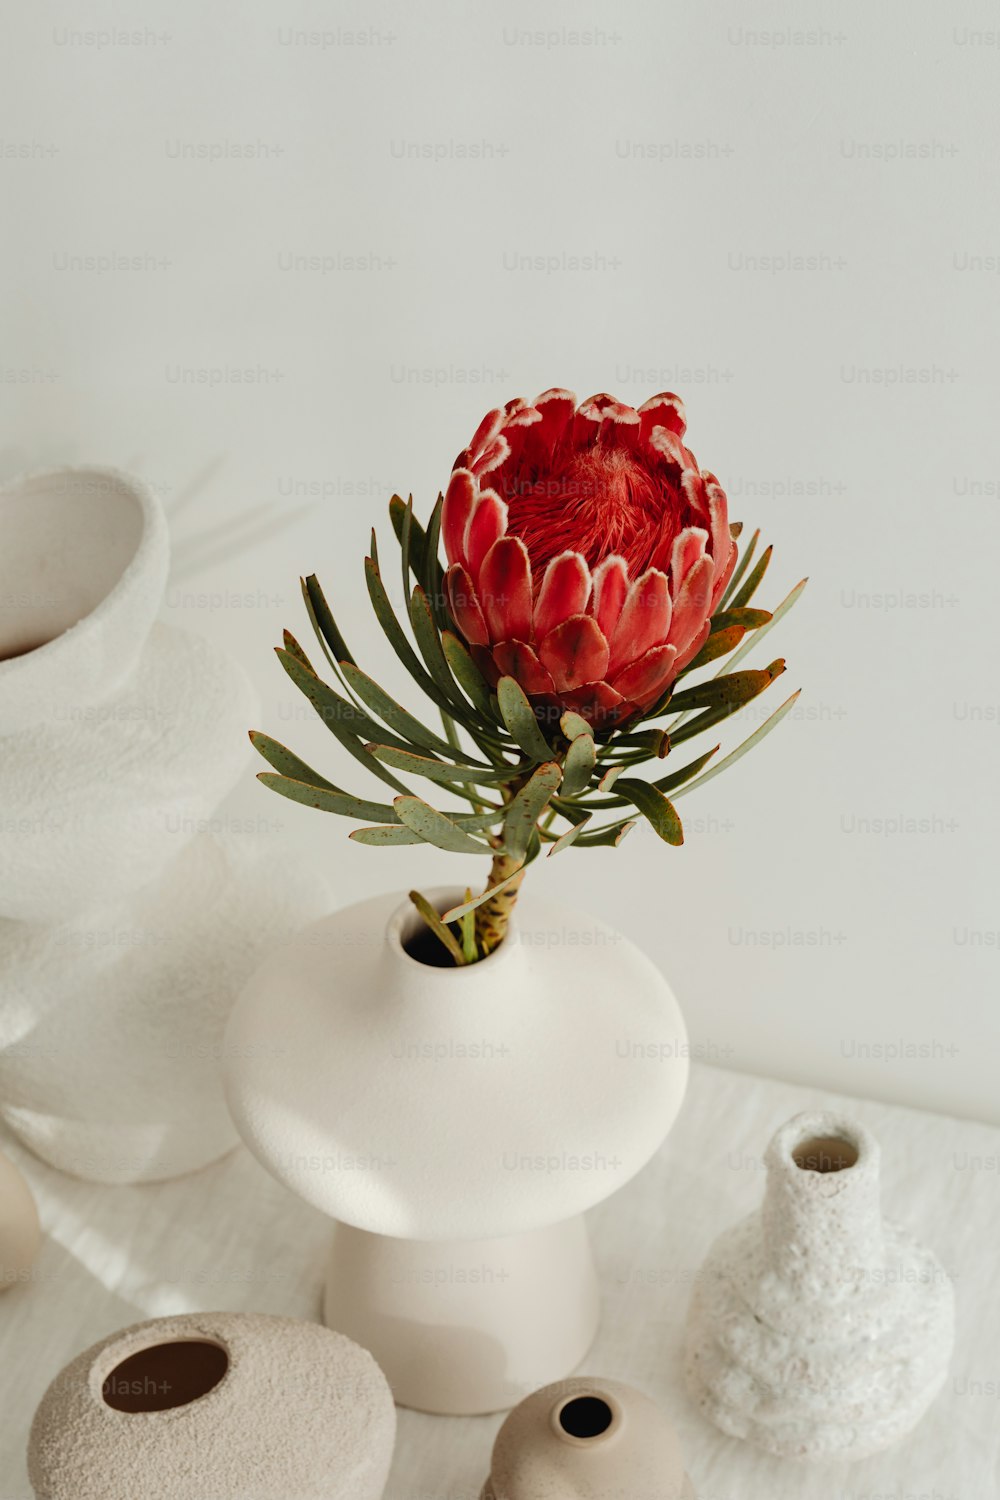 un vaso bianco con un fiore rosso in esso